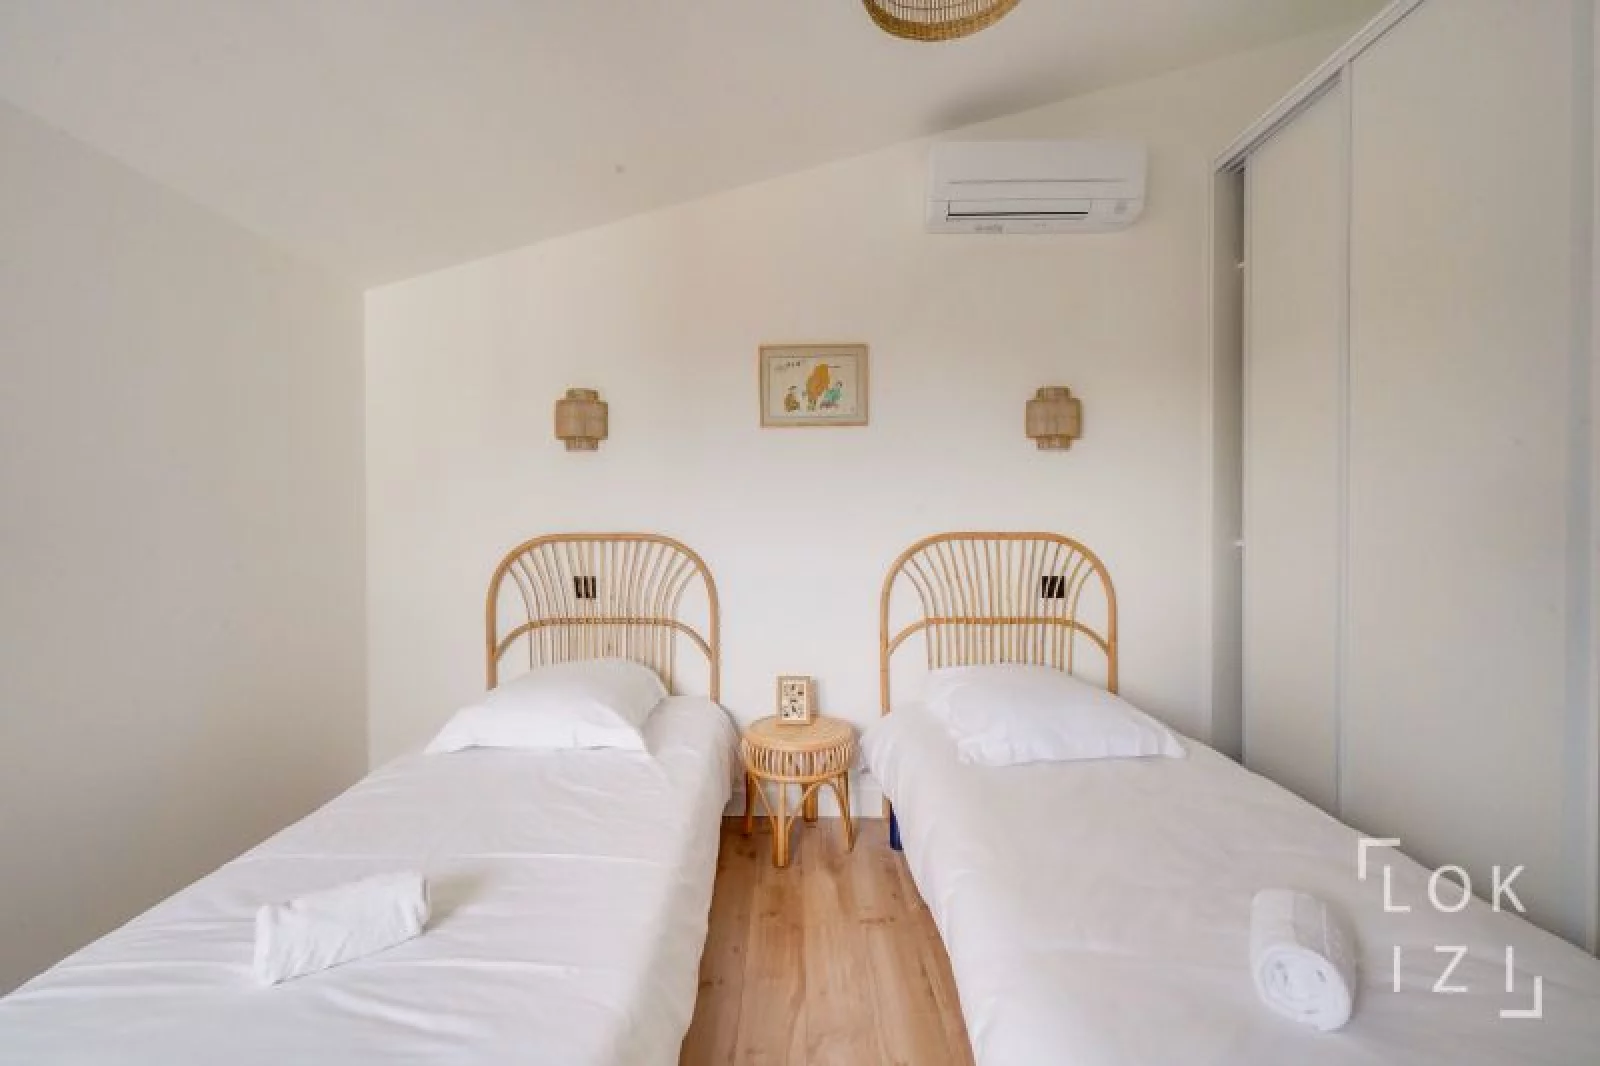 Location appartement duplex meublé 4 pièces 109m² (Bordeaux - Ornano)